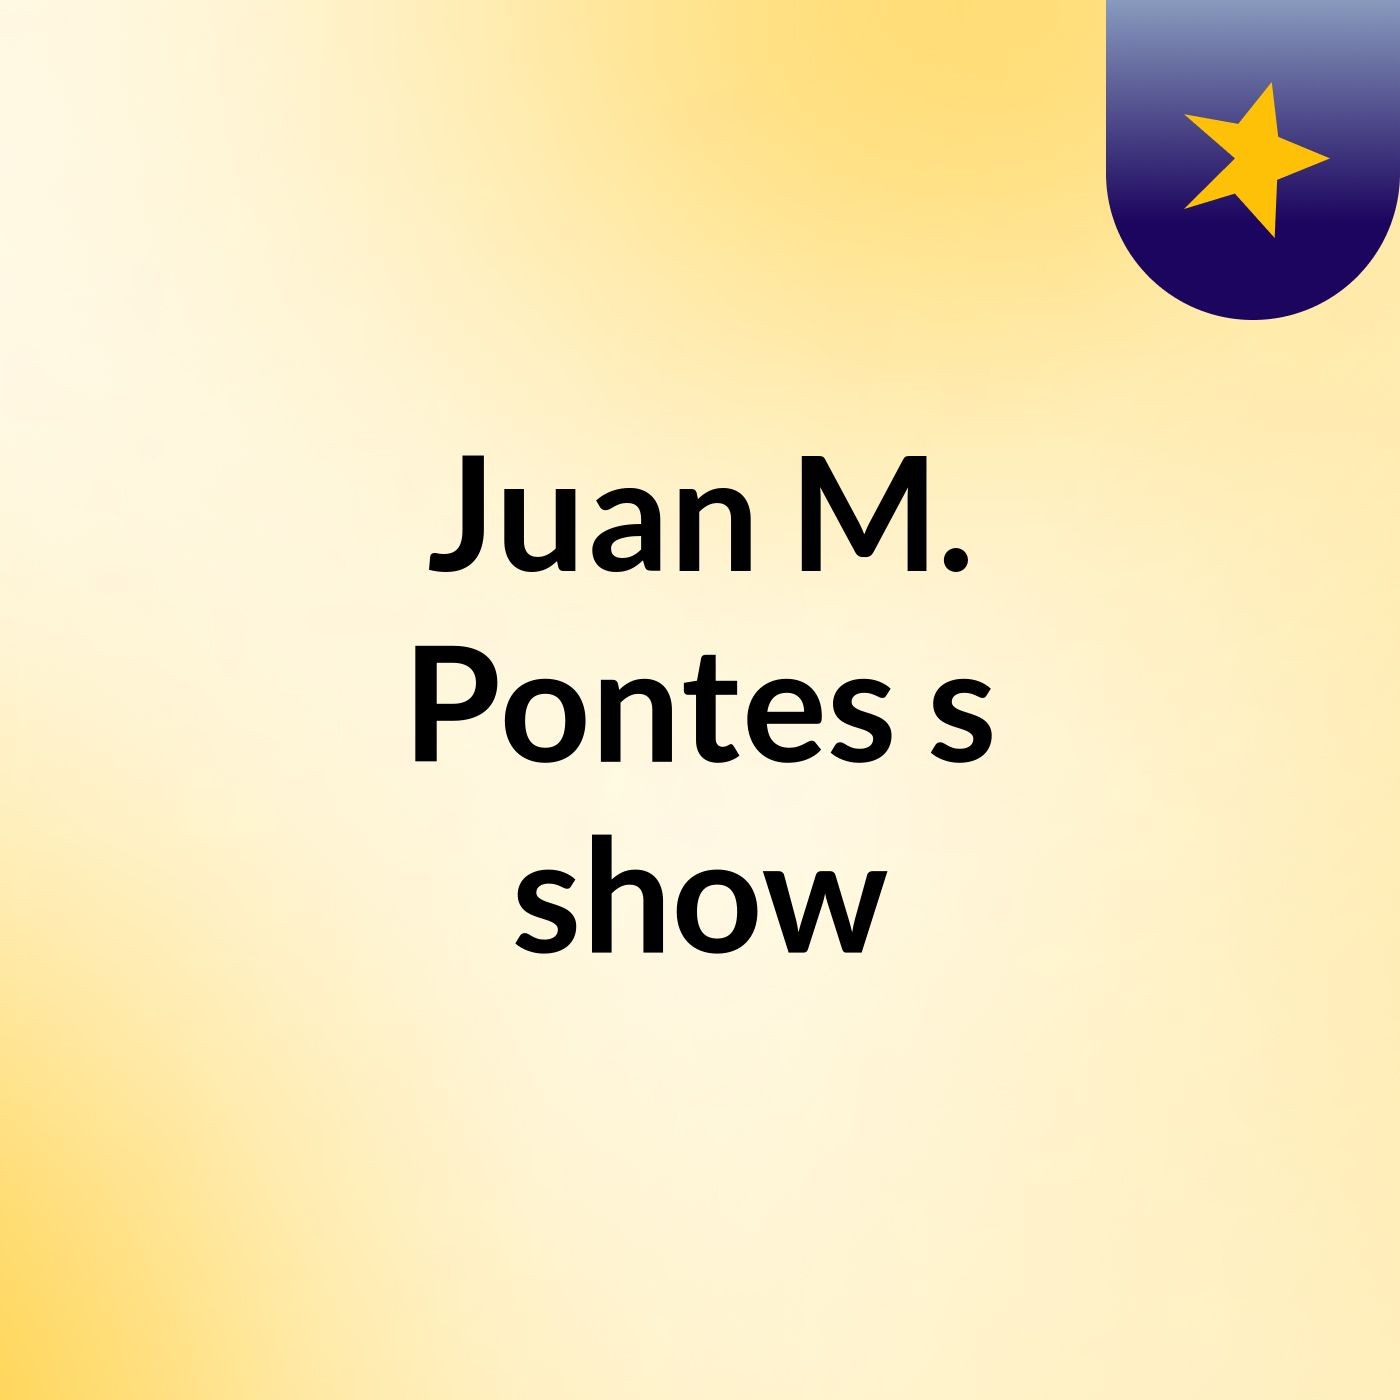 Juan M. Pontes's show